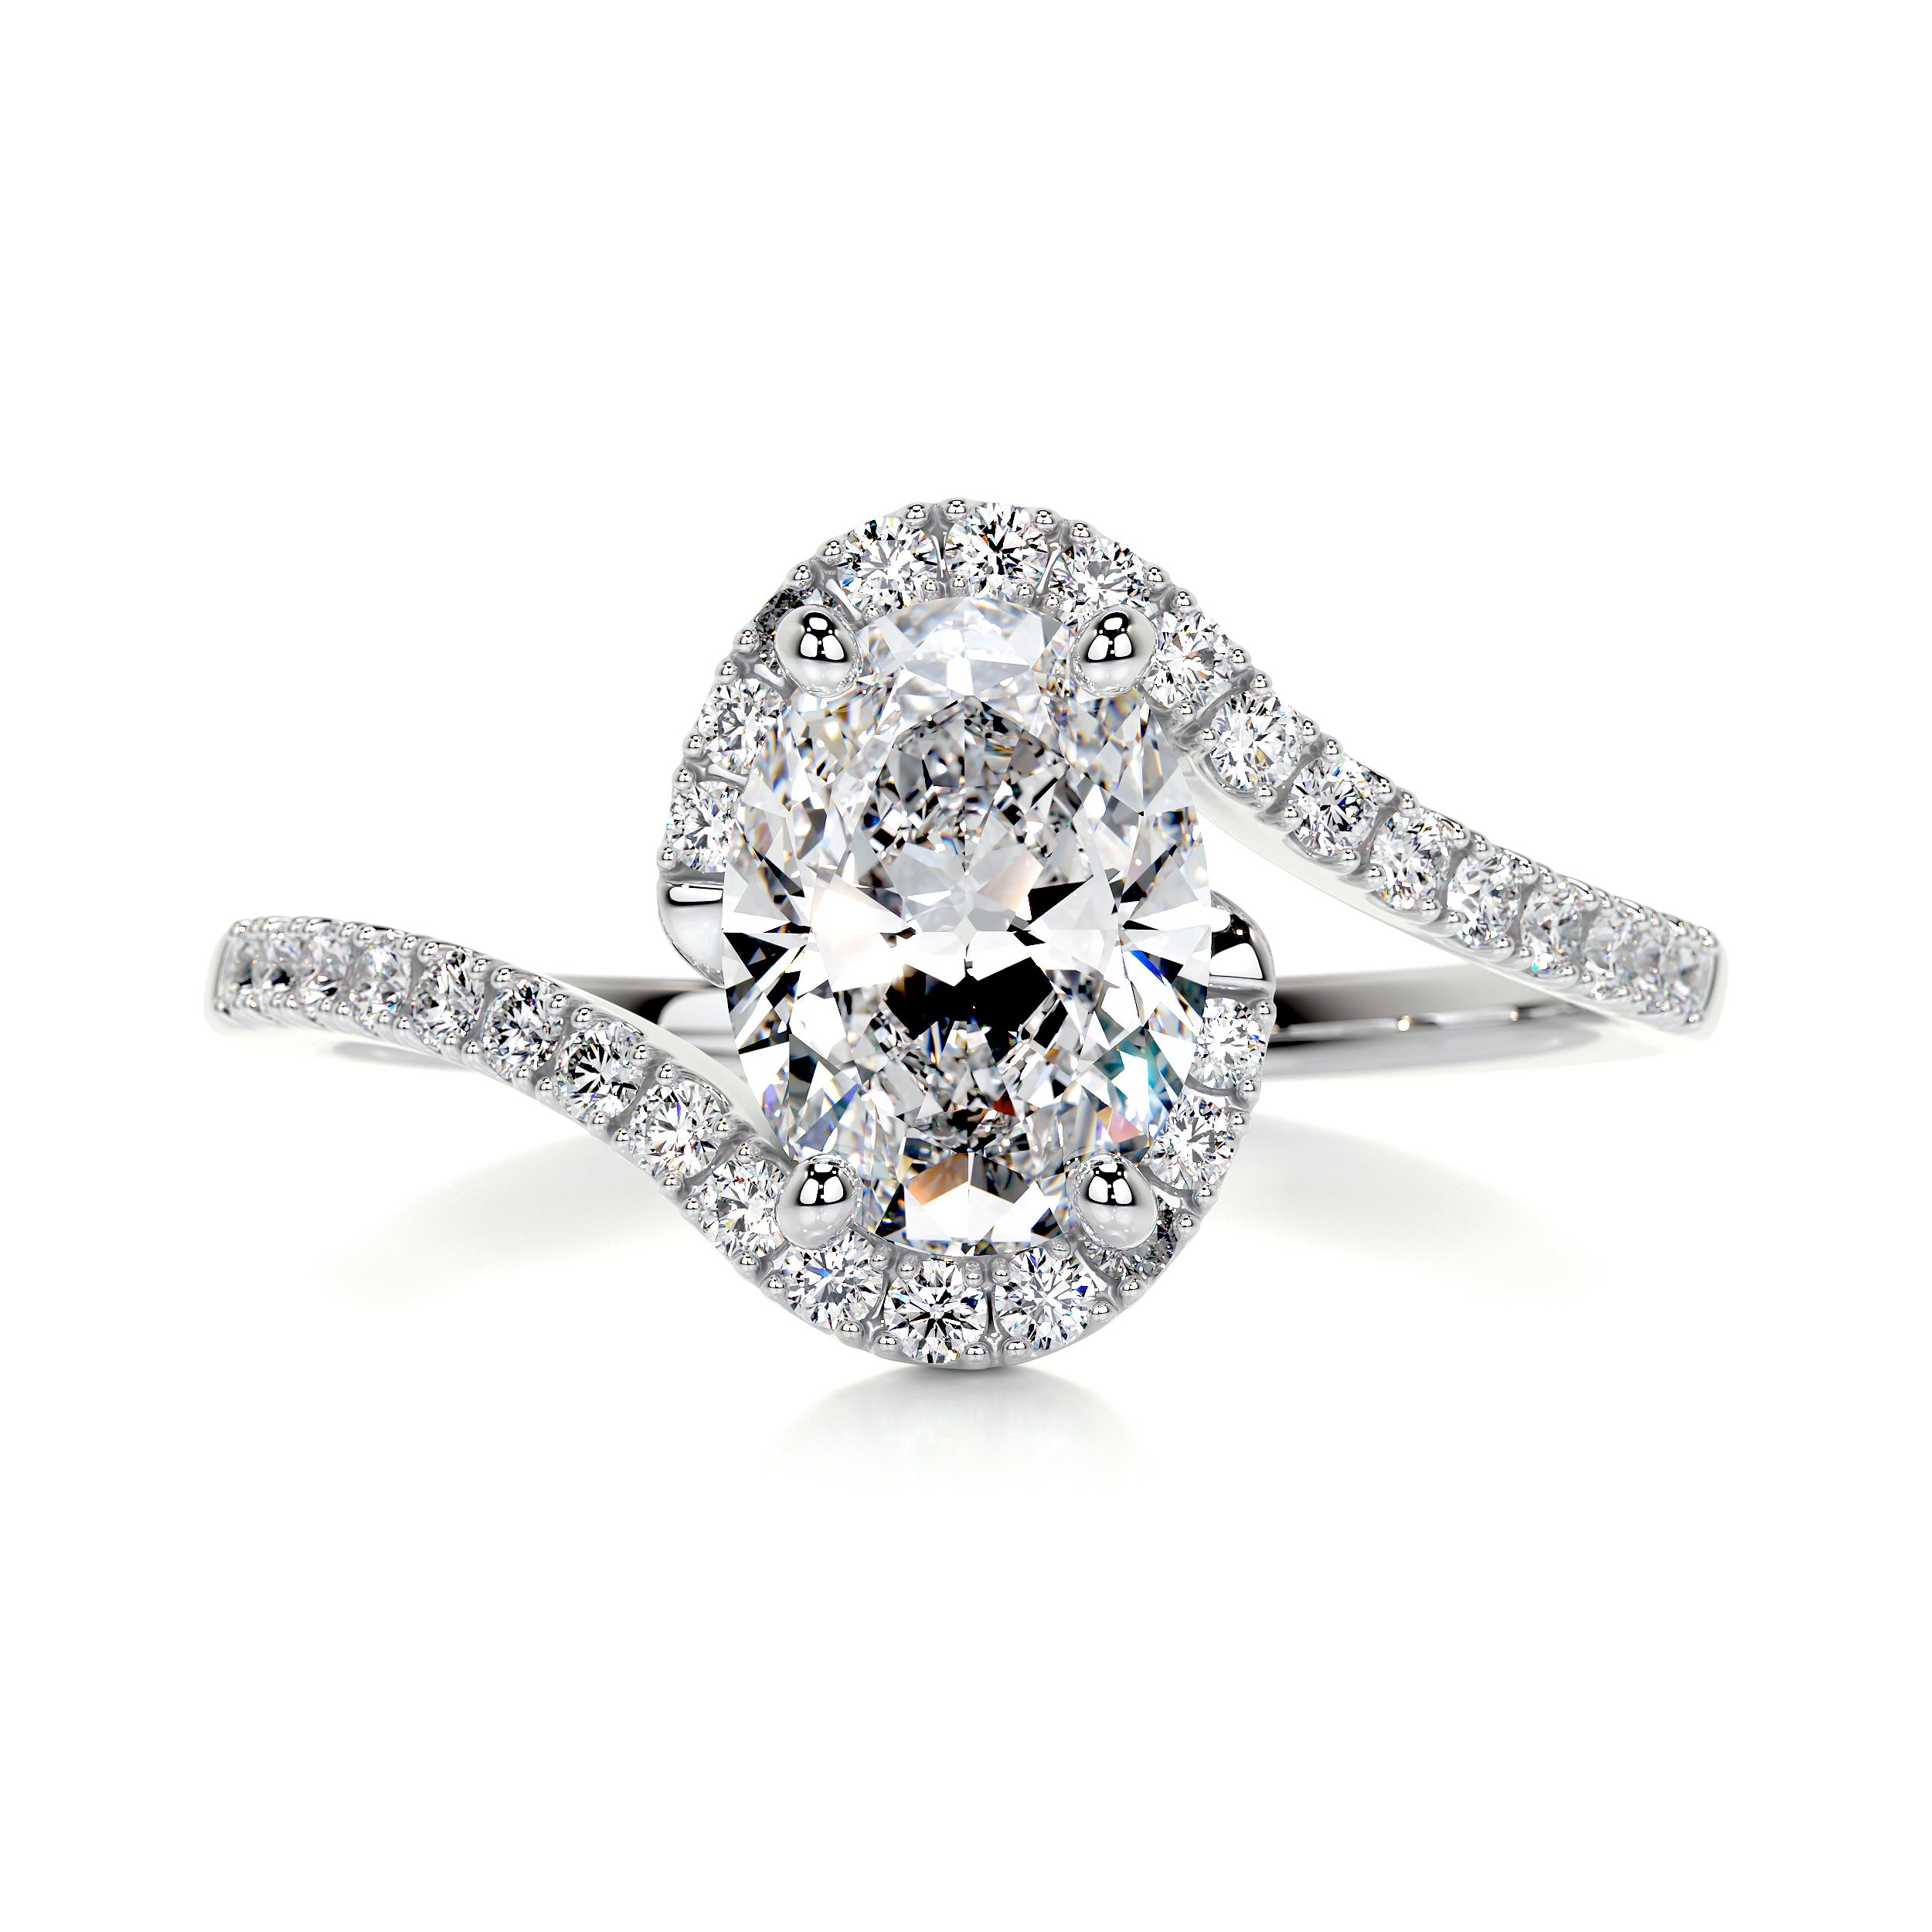 Stella Diamond Engagement Ring   (1.25 Carat) -14K White Gold